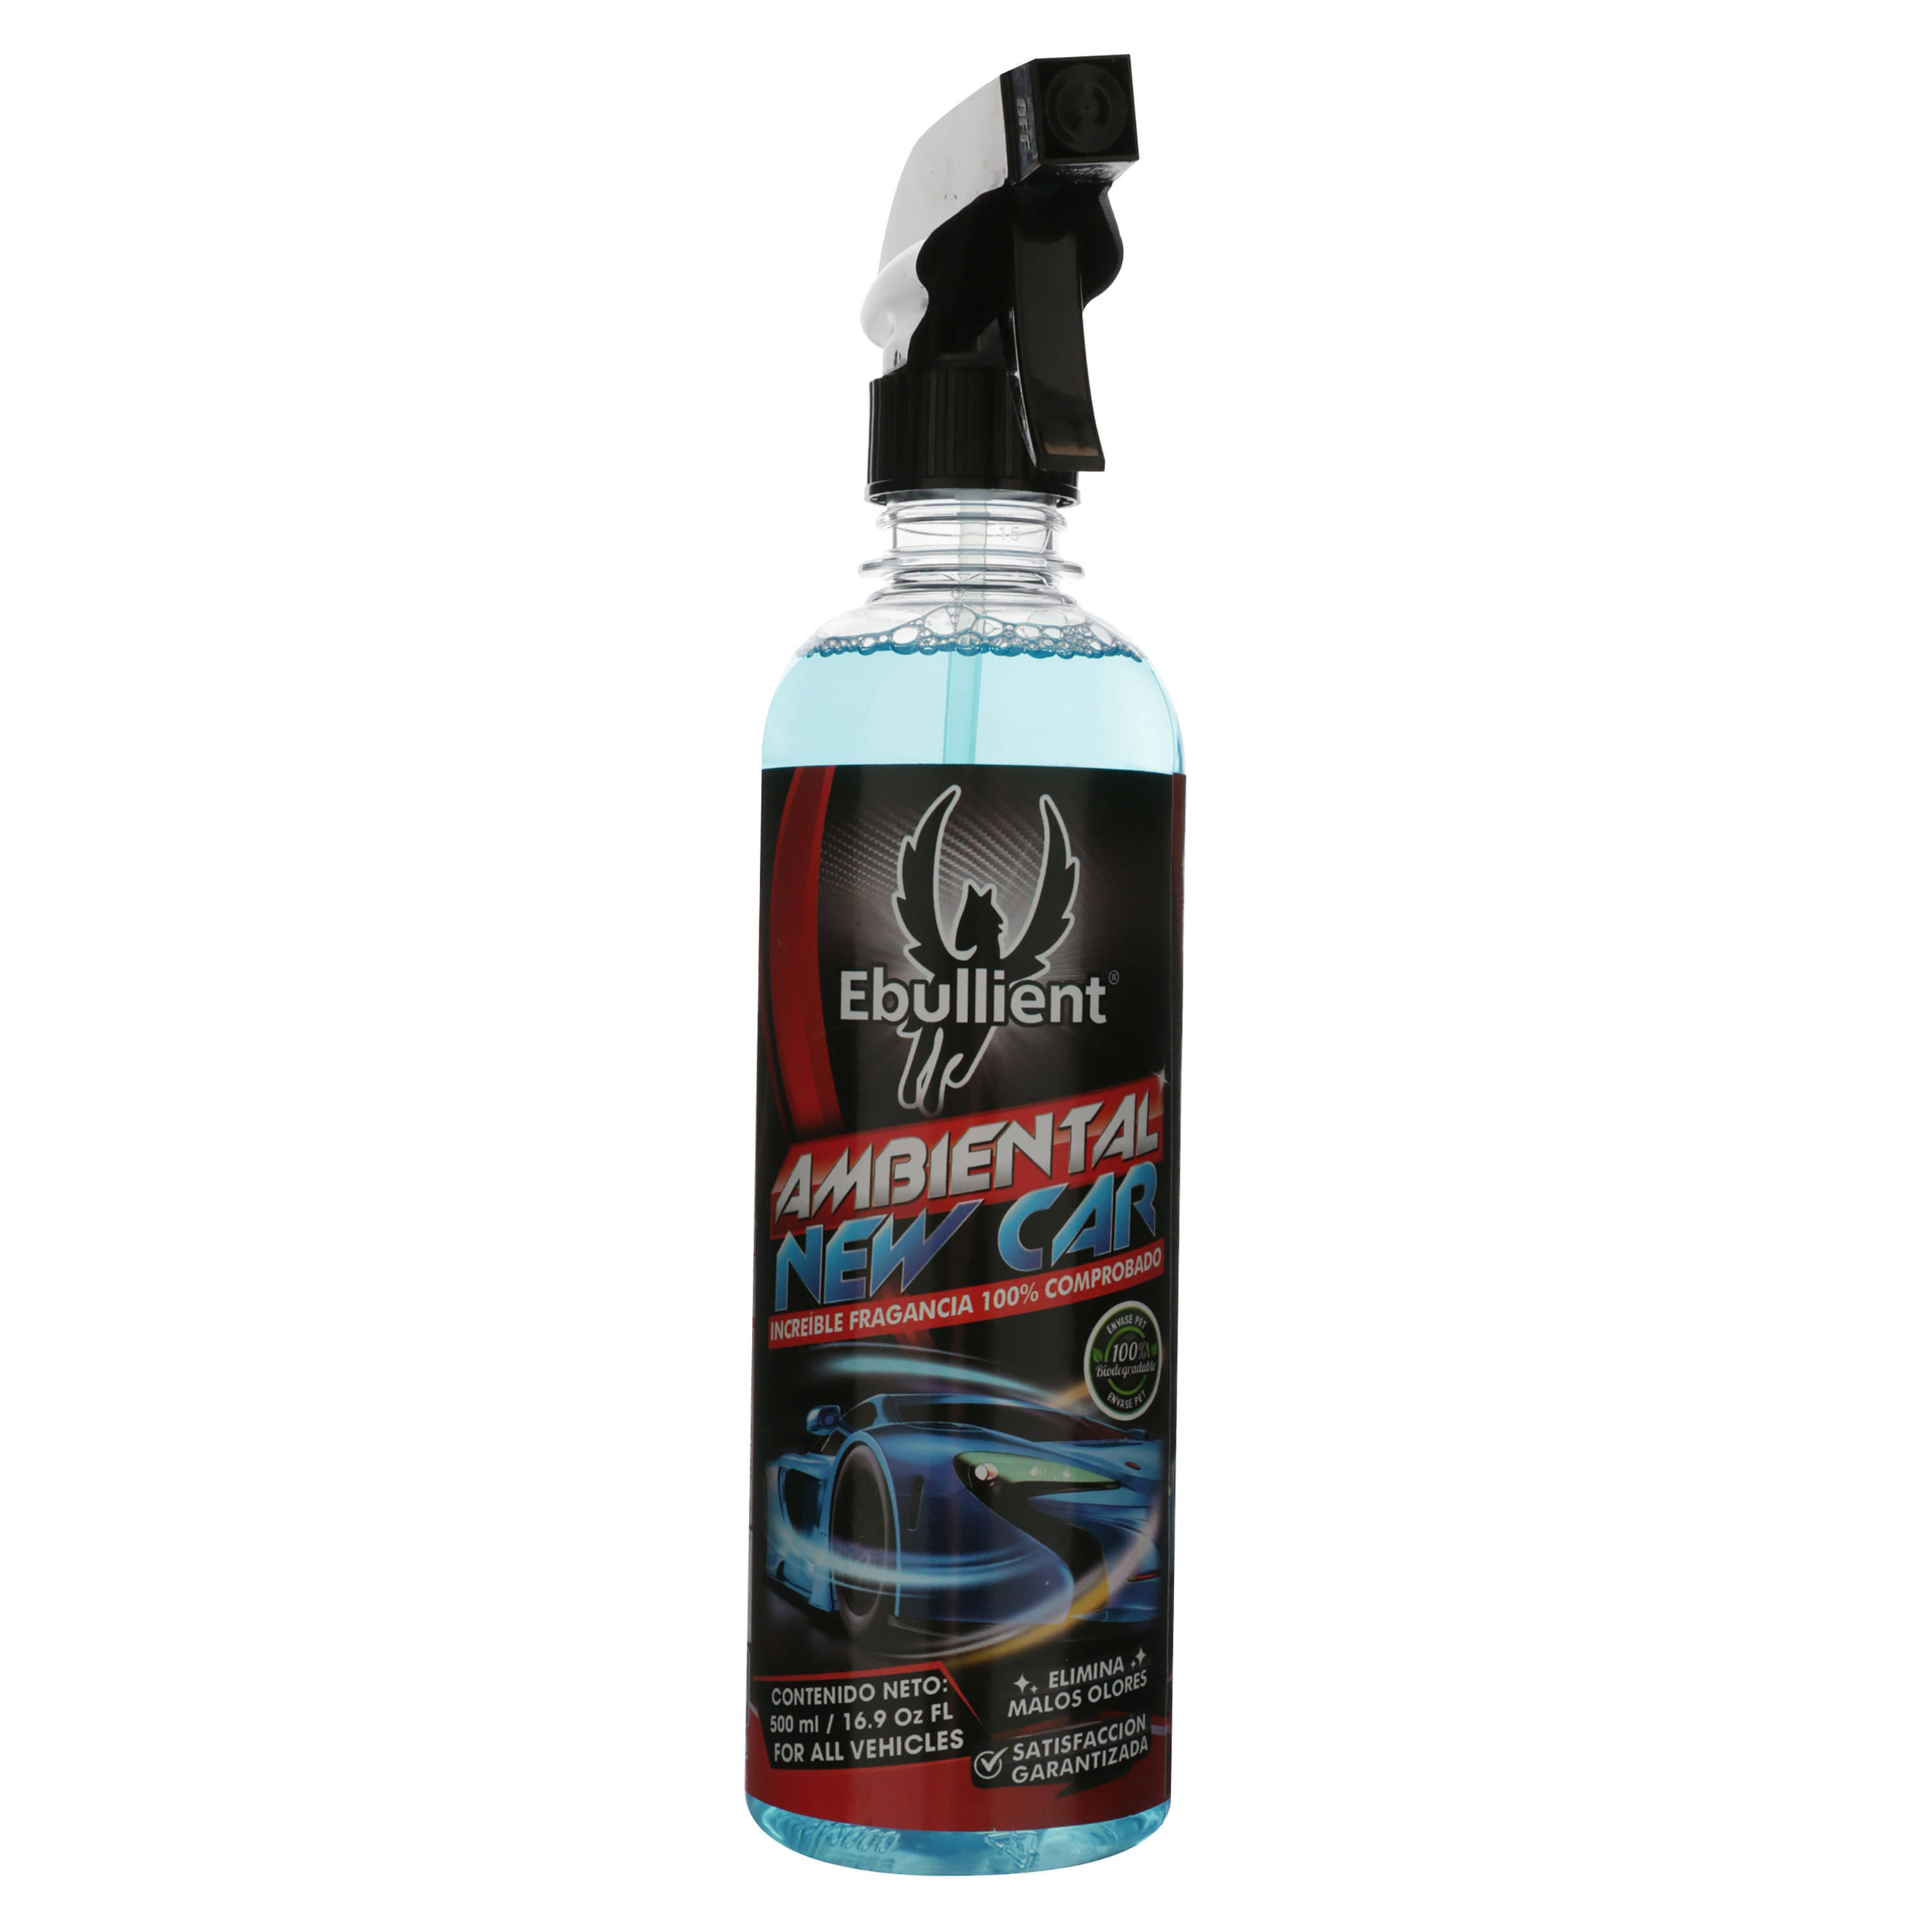 Comprar Aromatizante para carro Ebullient, en spray new car -500ml